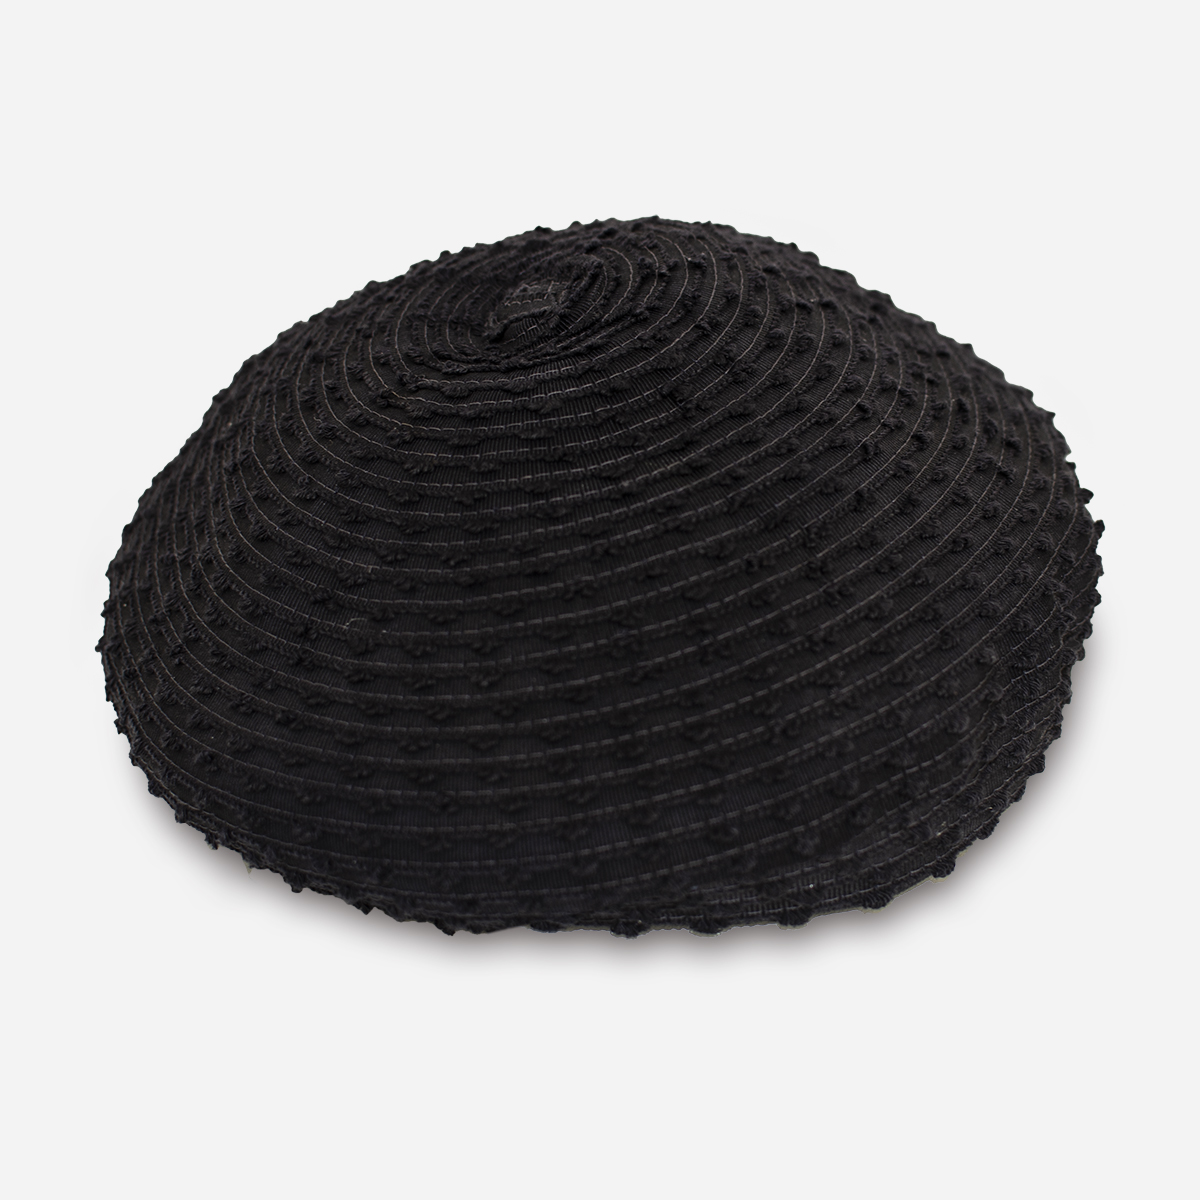 1950s black beret